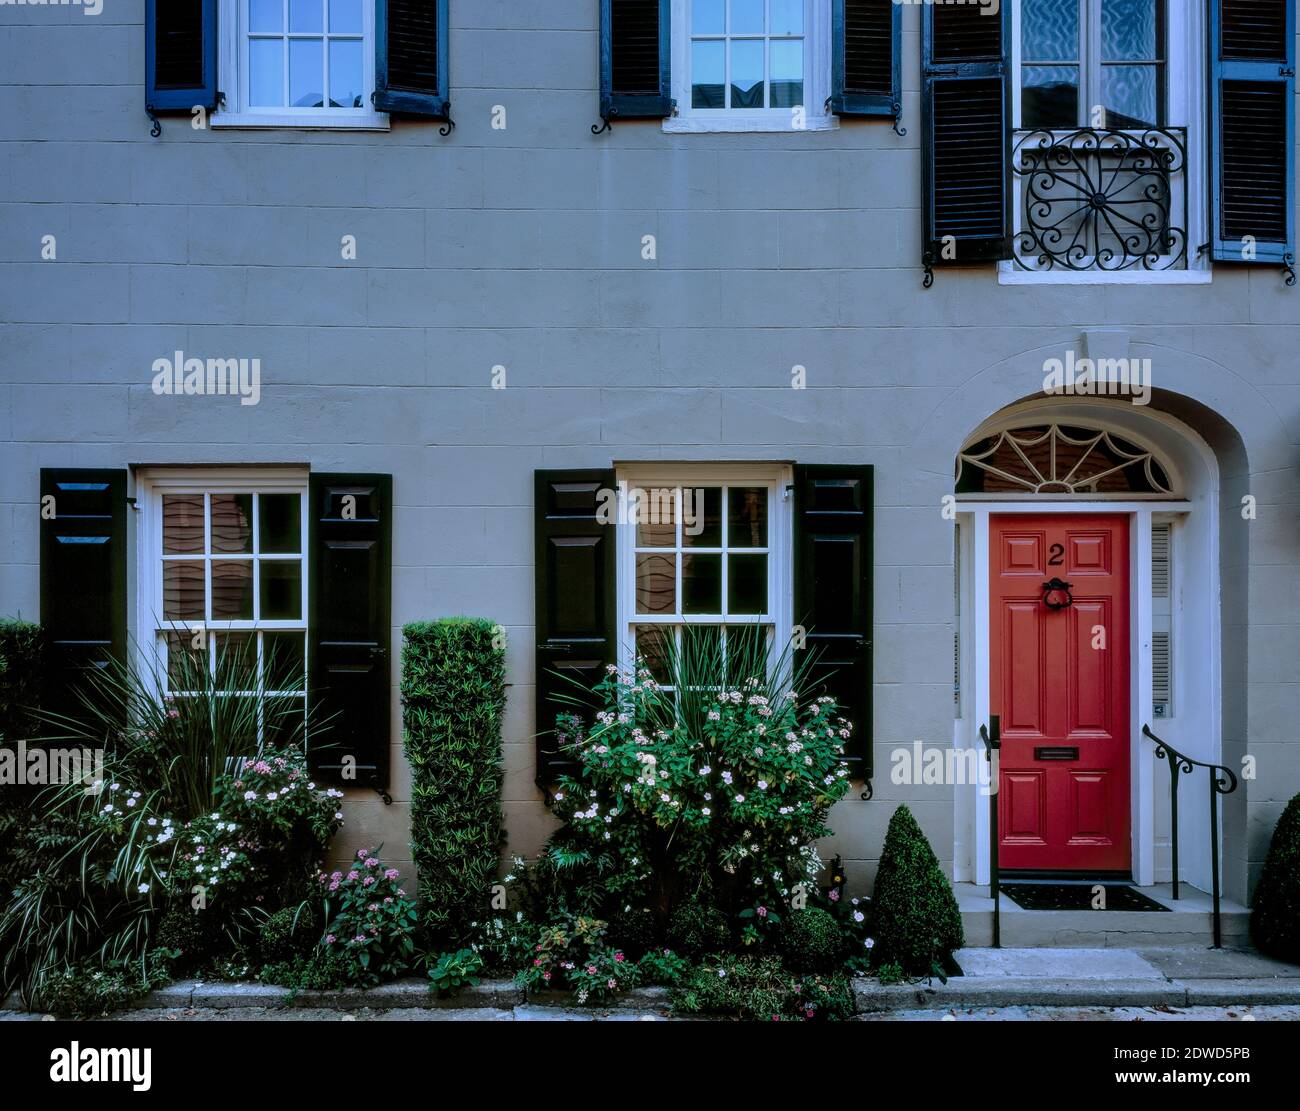 Entrée privée, Windows, quartier historique, Charleston, Caroline du Sud Banque D'Images